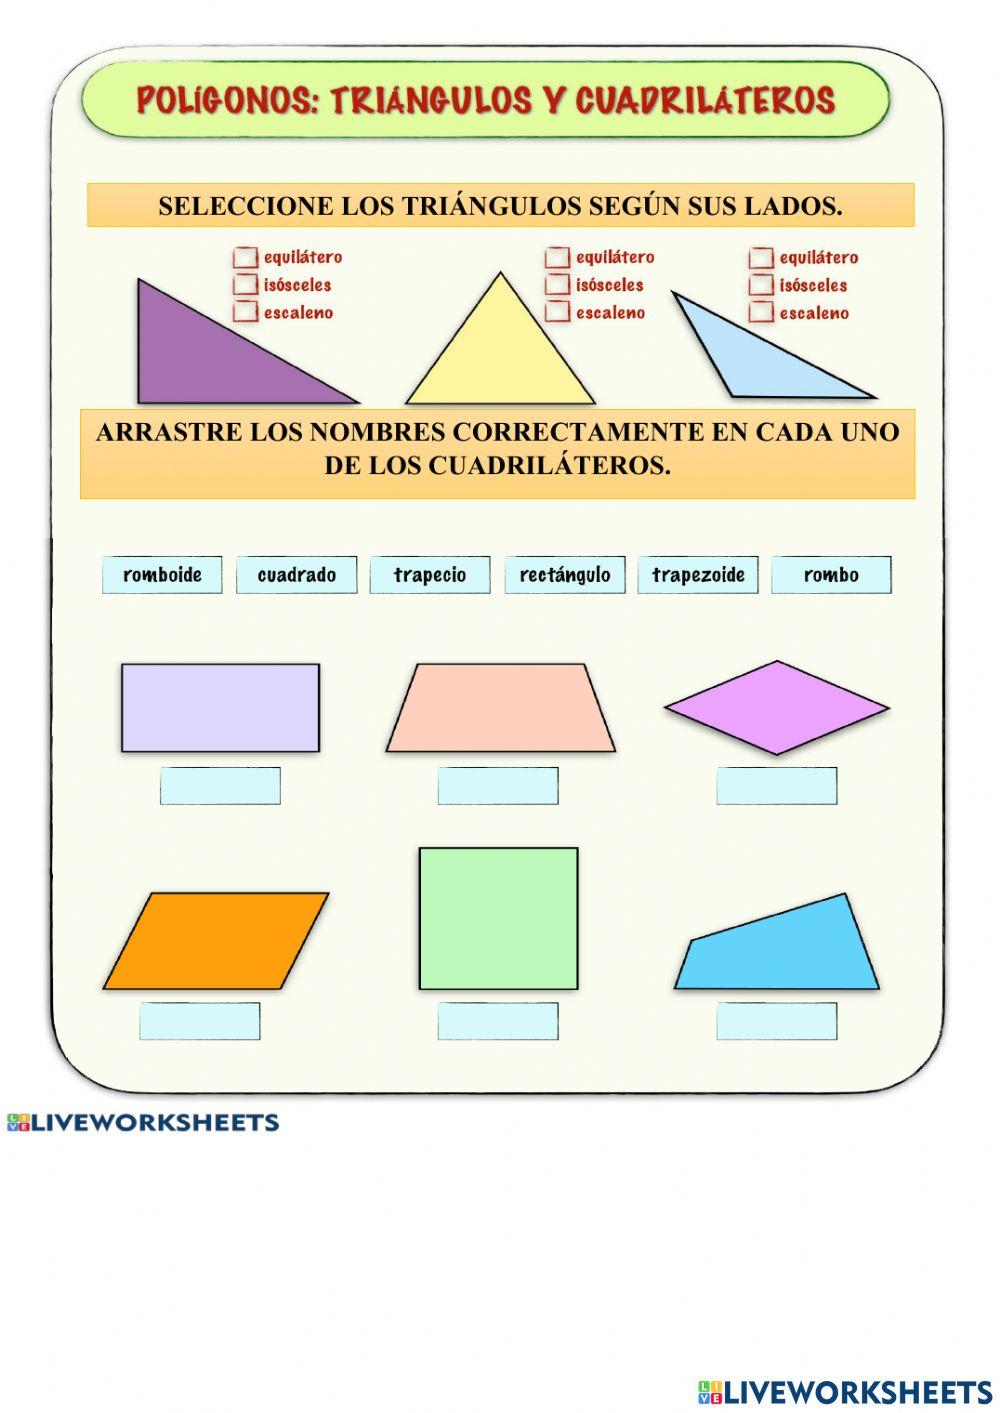 Polígonos: triángulos y cuadriláteros